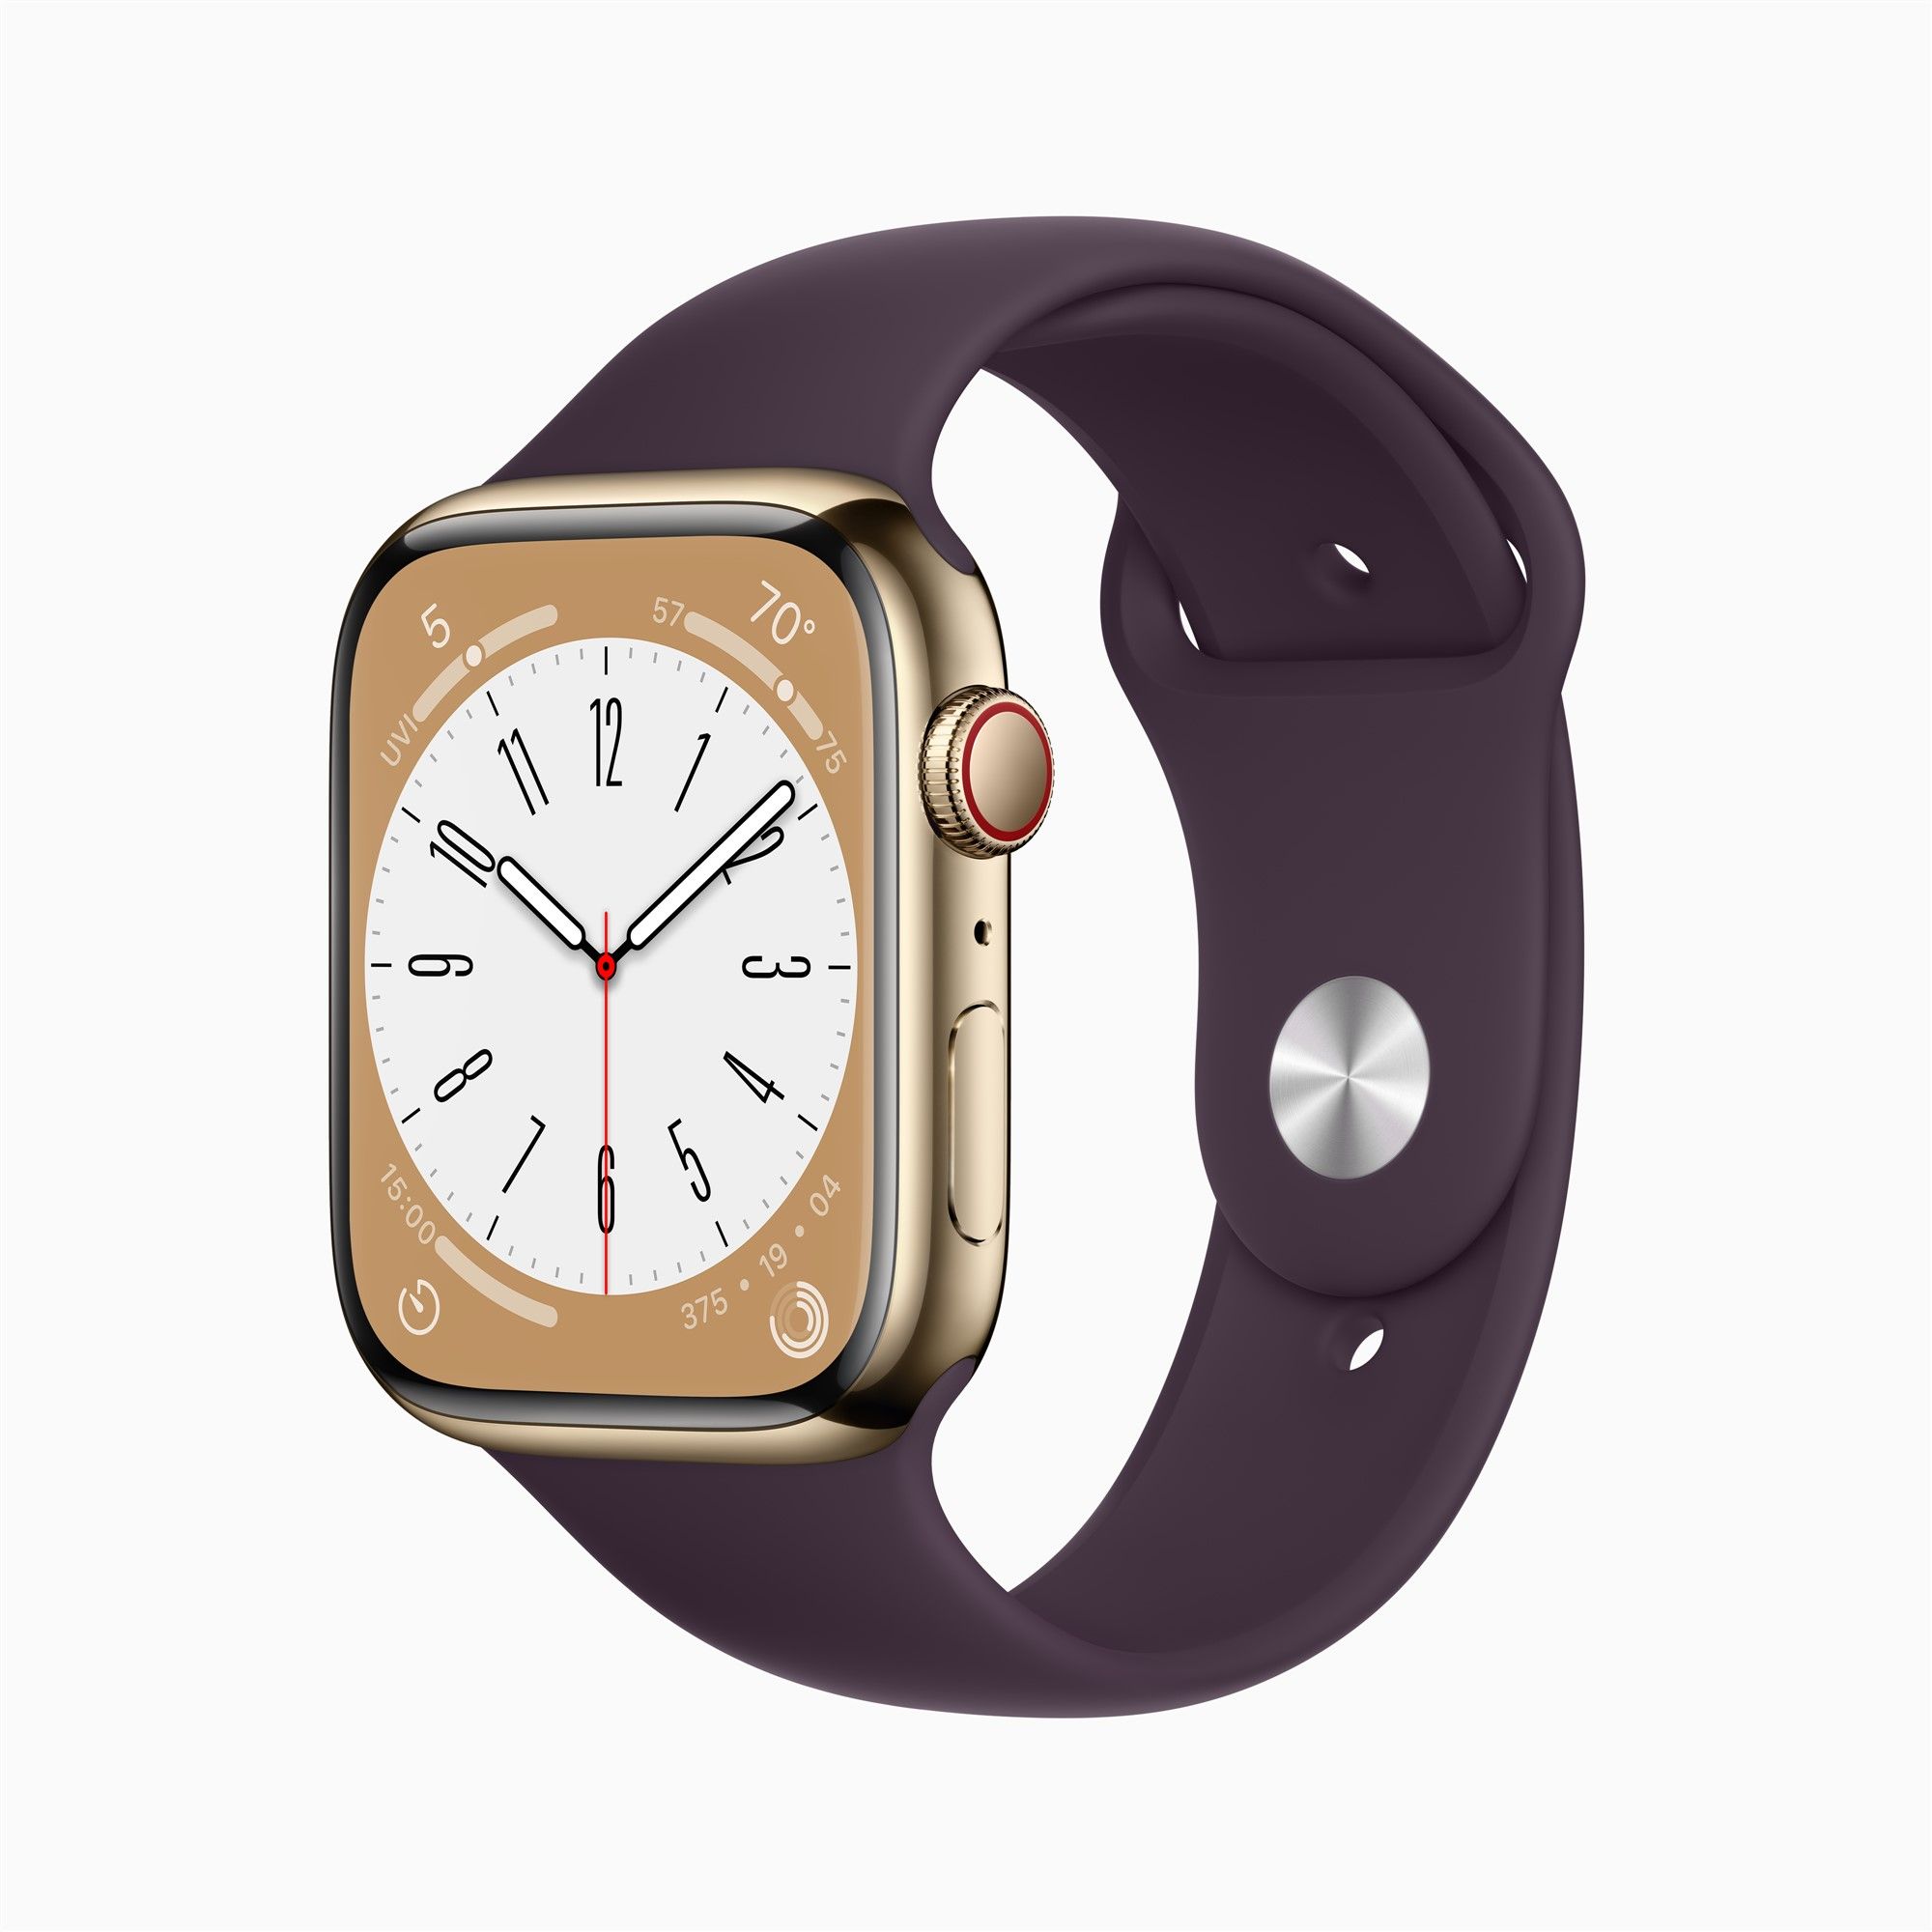 erscheint Watch Pro Airpods Apple Generation 2. in in Ultra-Version,